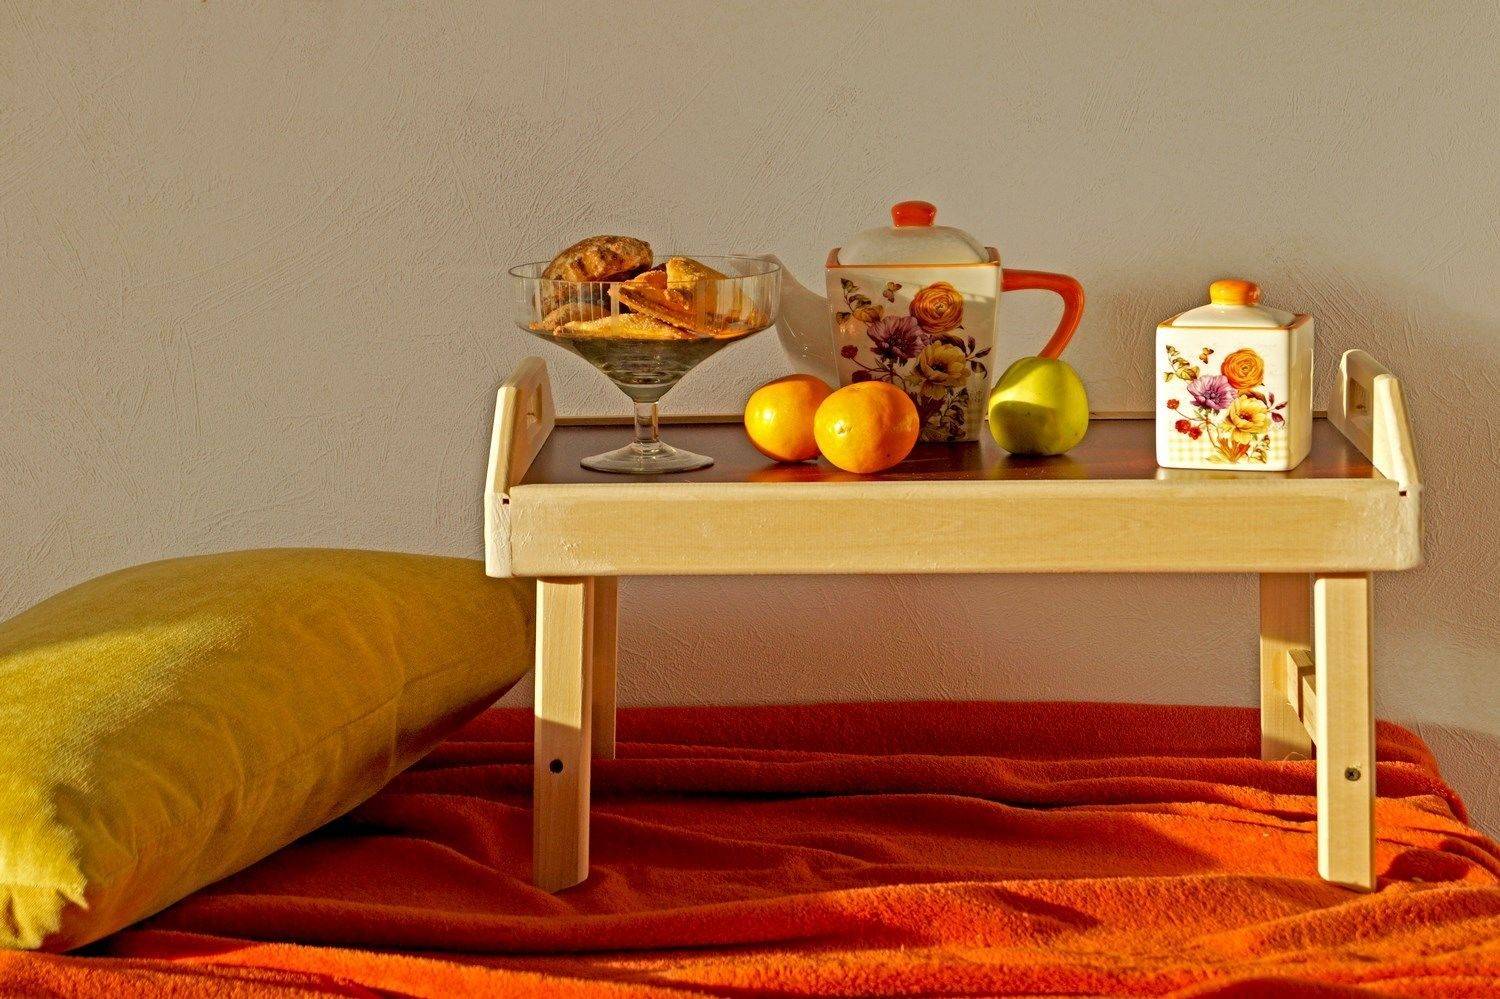 Столик для завтрака в постель своими руками: выбор материалов, пошаговая инструкция по изготовлению | строй легко